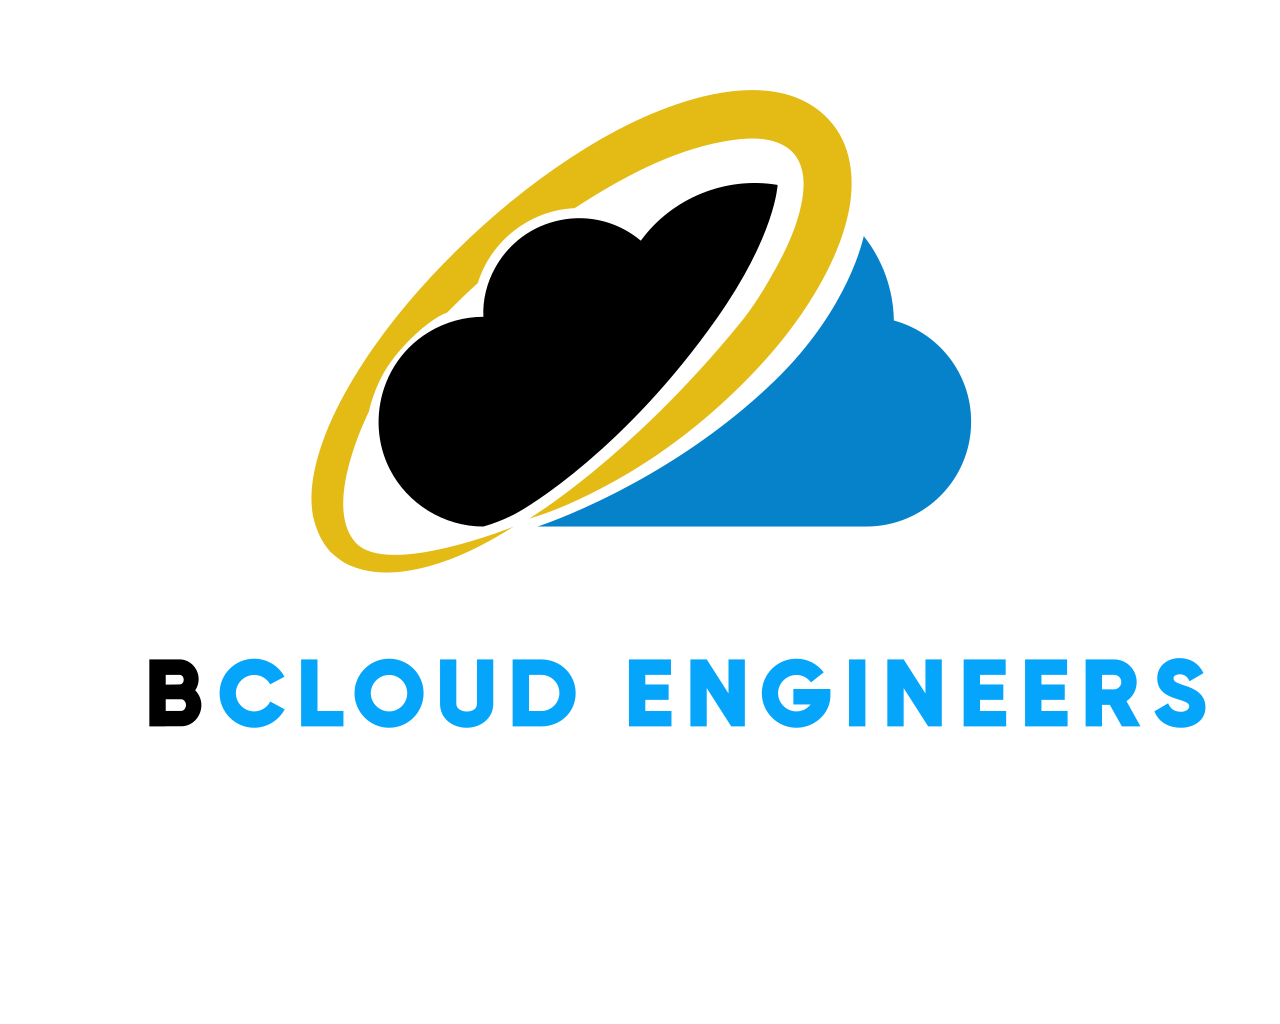 bcloud-engineers-web-page-logo